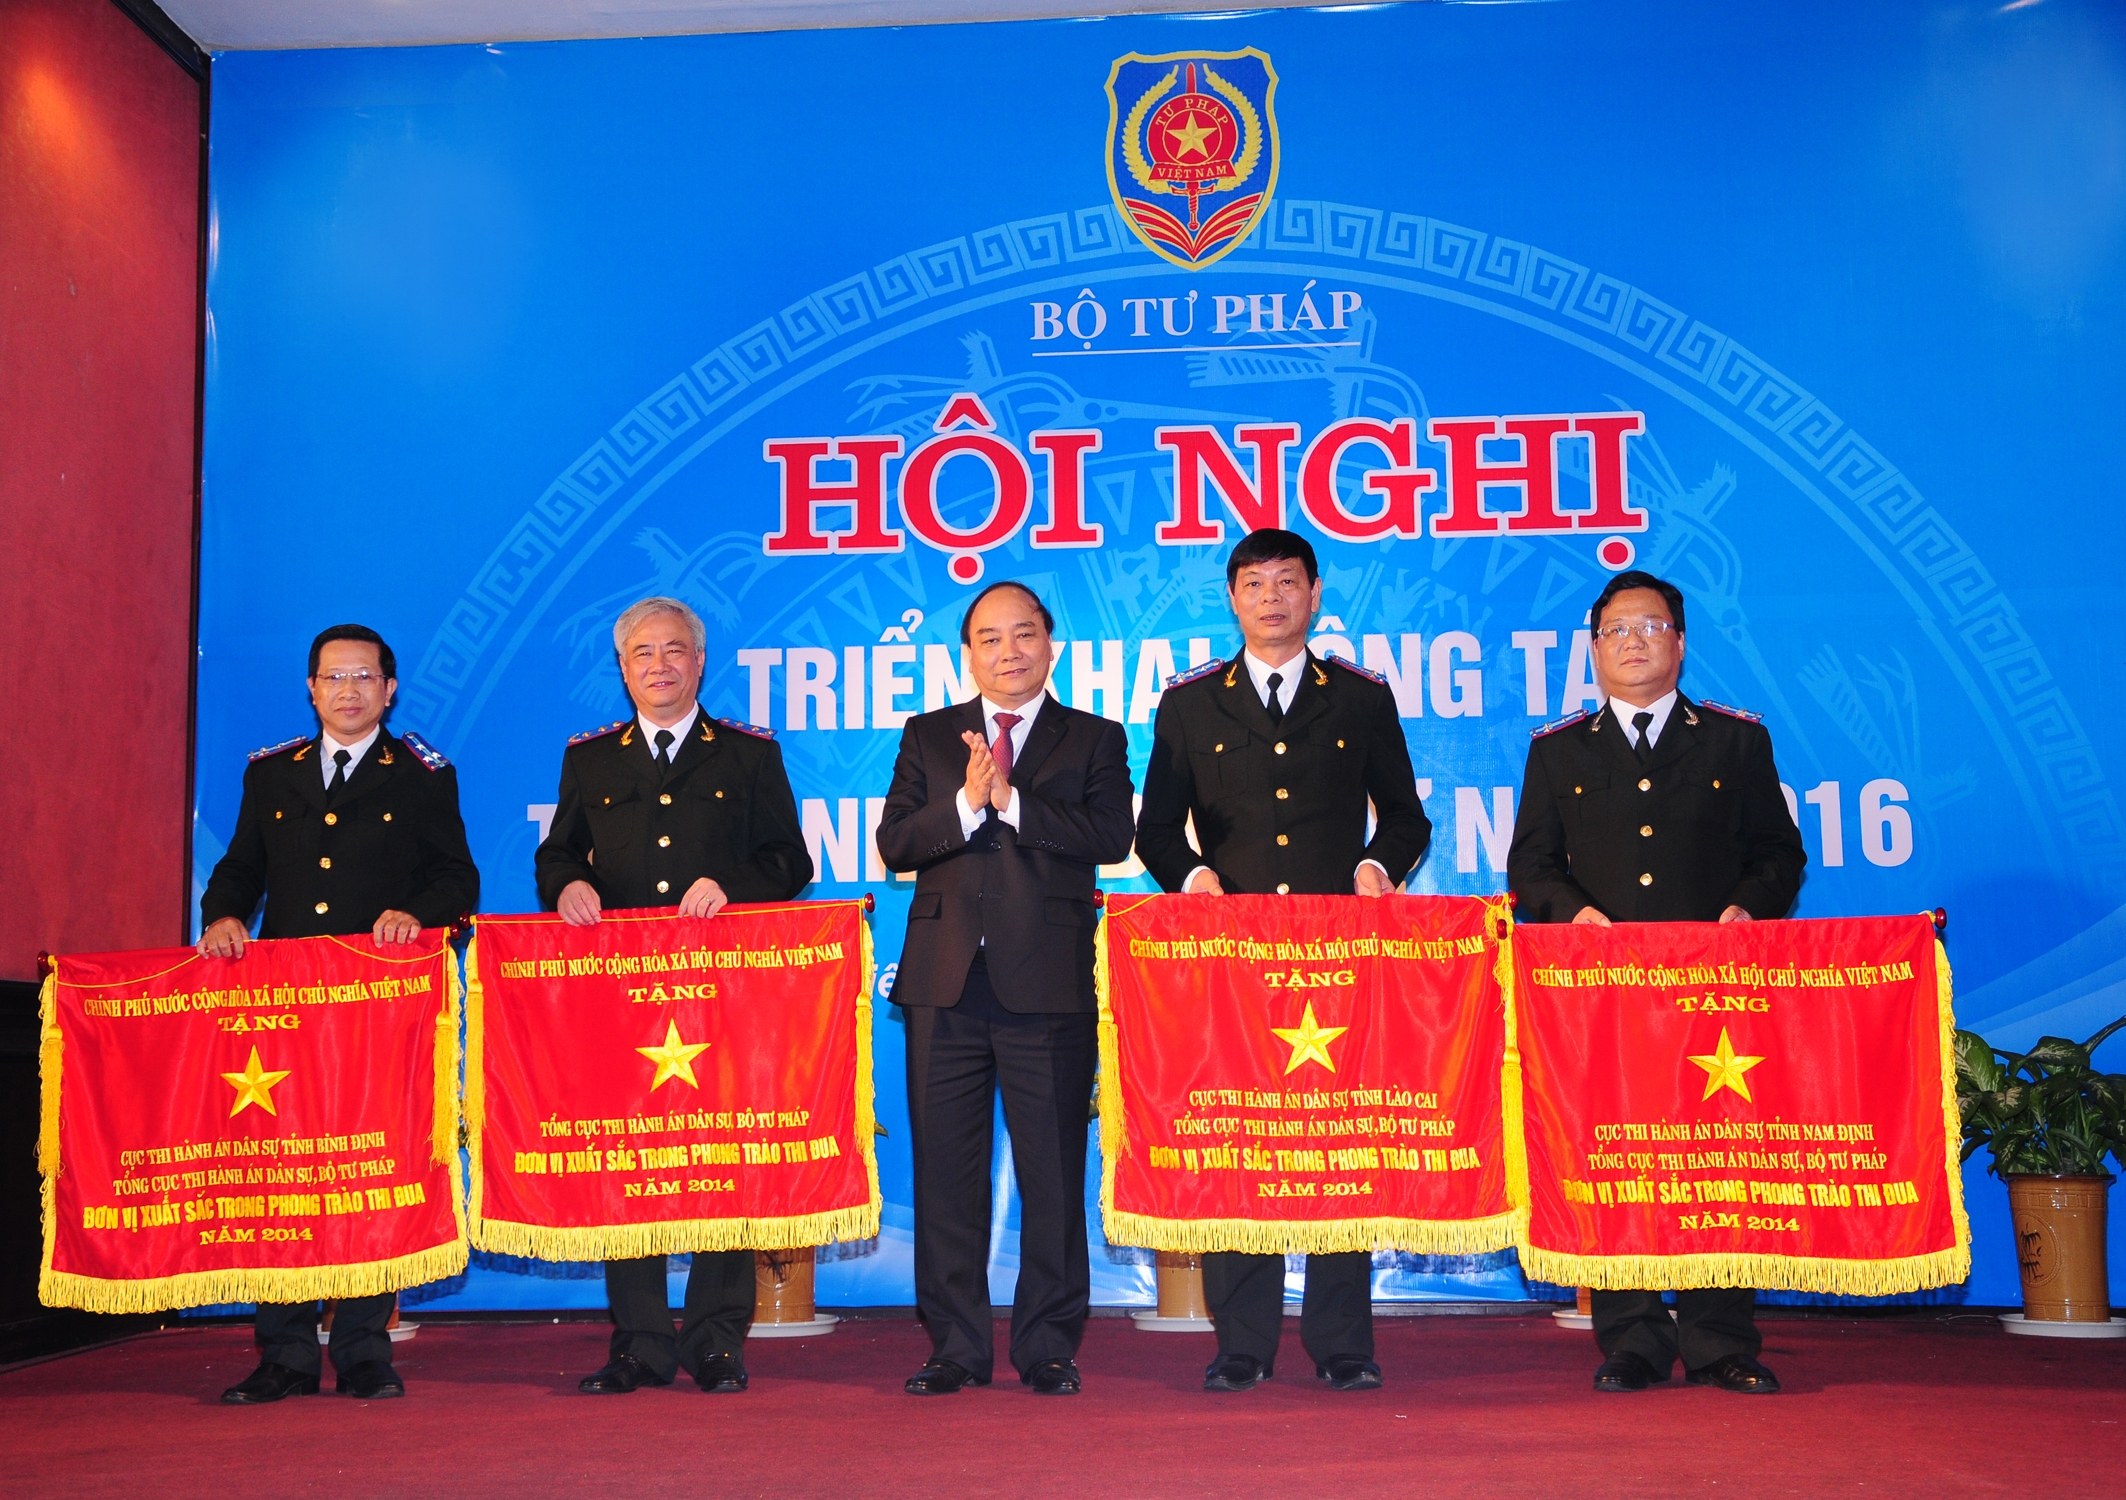 Phó Thủ tướng Chính Phủ Nguyễn Xuân Phúc trao tặng cờ thi đua cho Tổng cục Thi hành án dân sự và Cục Thi hành án dân sự các tỉnh tại Hội nghị triển khai công tác thi hành án dân sự năm 2016 tại tỉnh Thừa Thiên Huế ngày 11/12/2015.